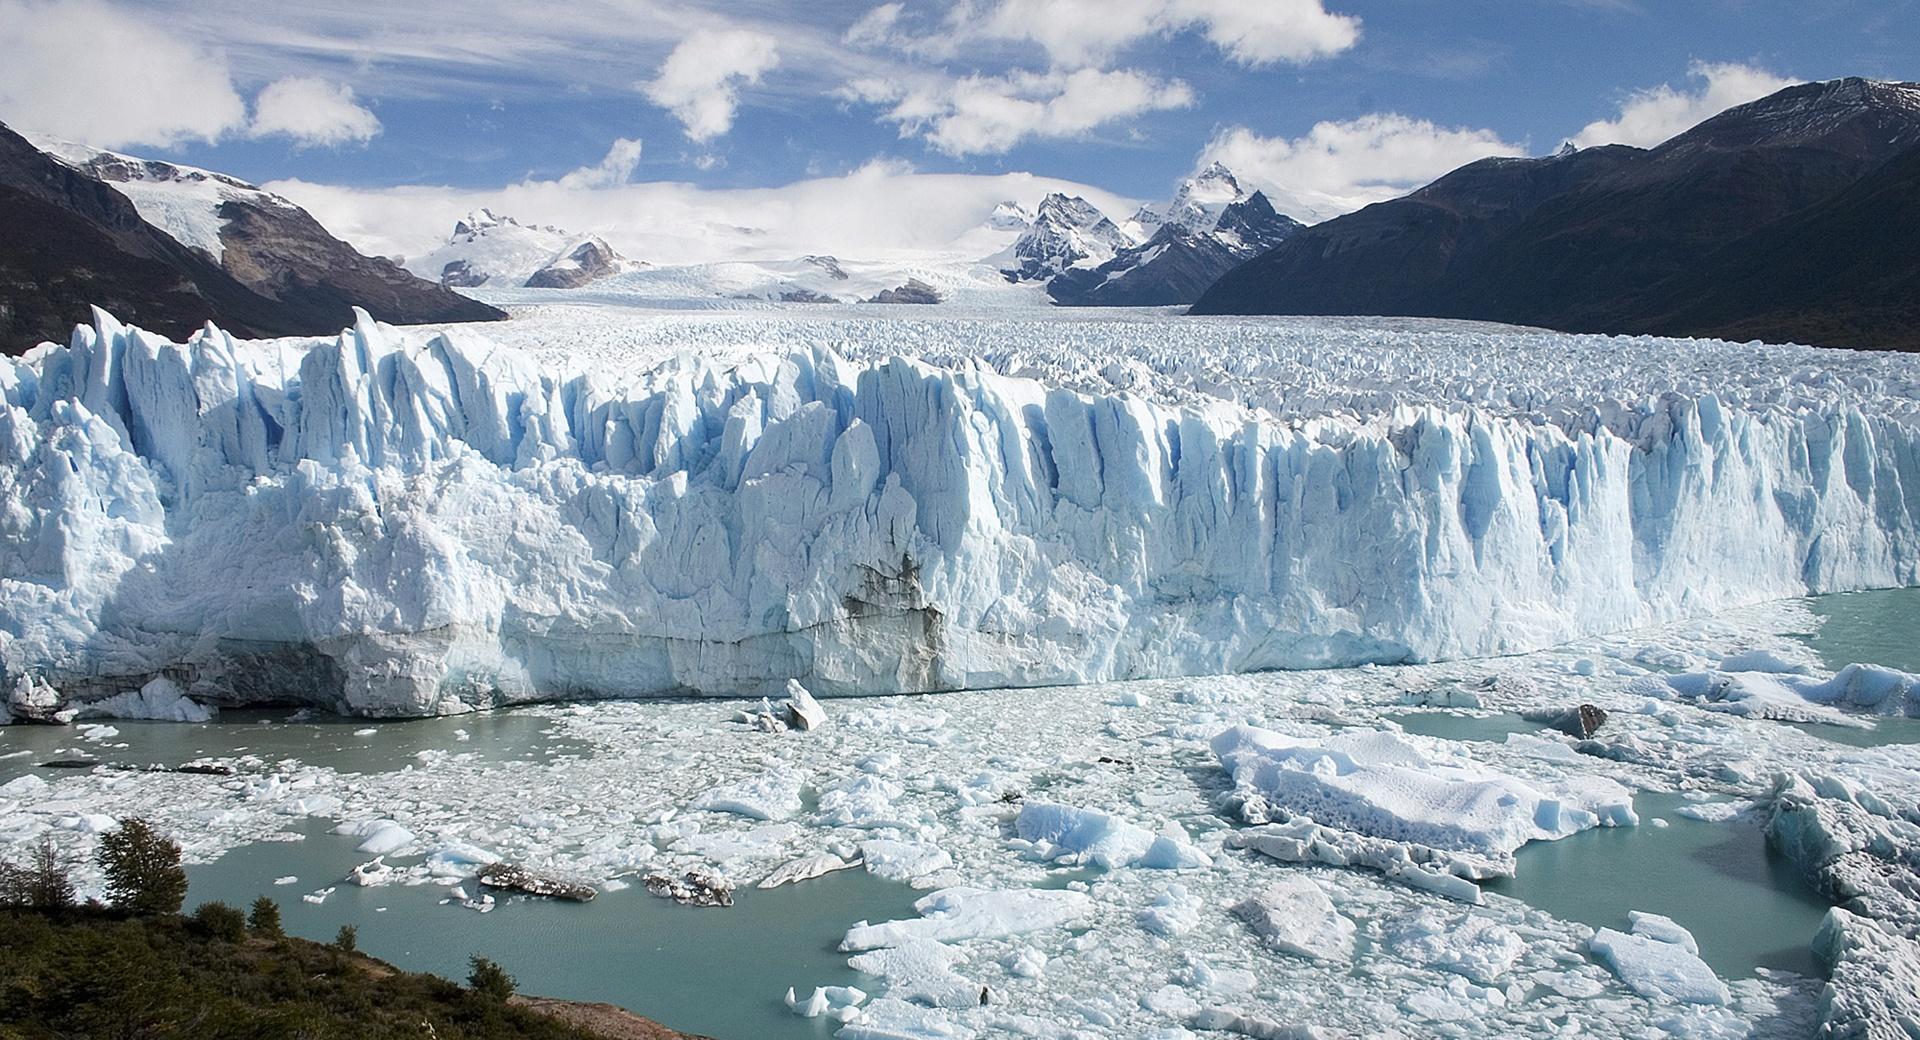 Perito Moreno Glacier at 1024 x 768 size wallpapers HD quality